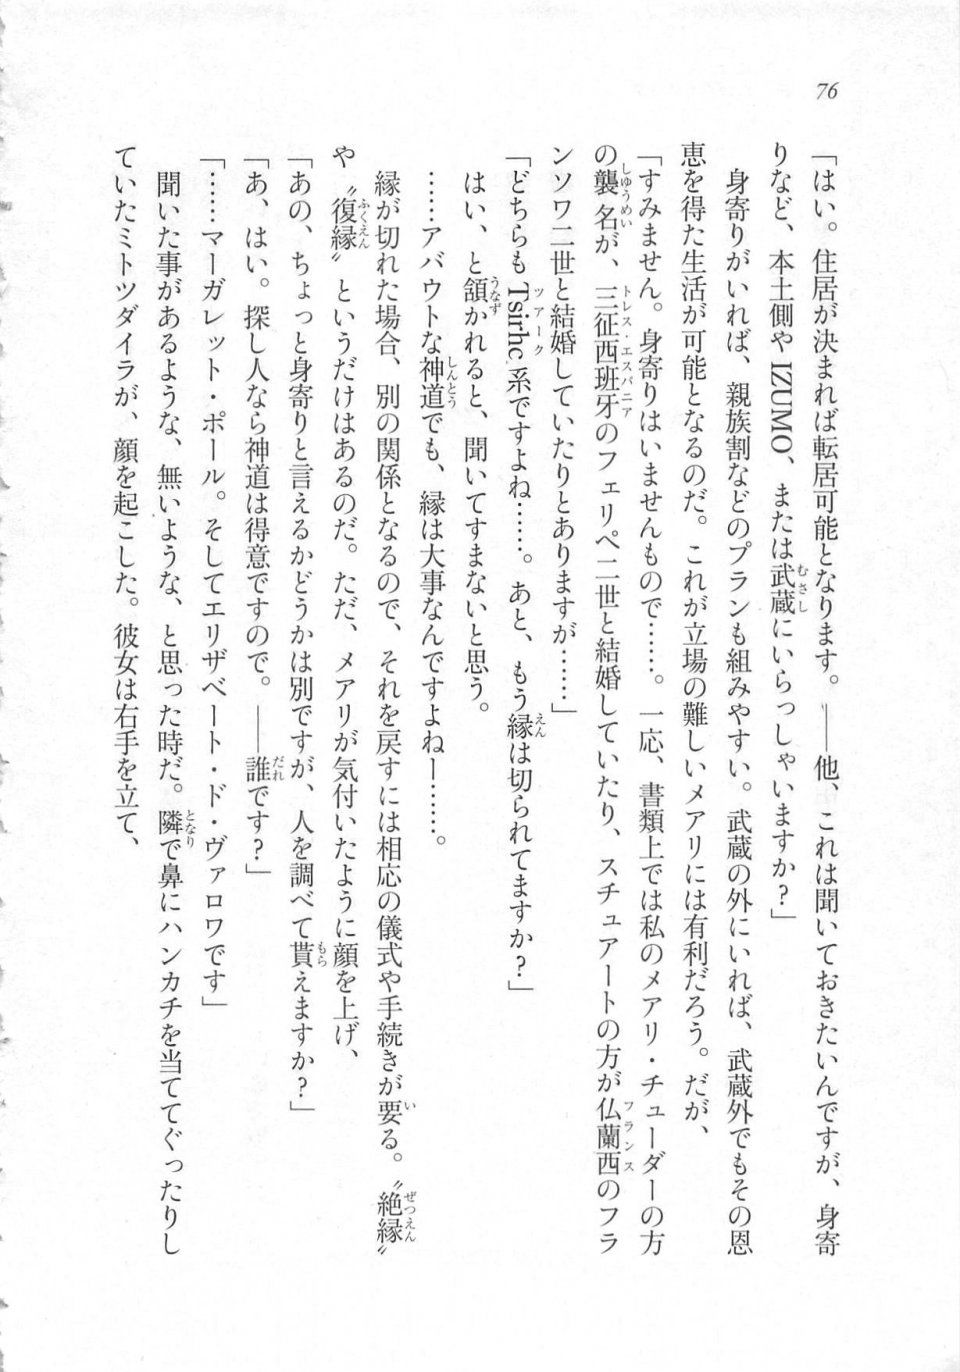 Kyoukai Senjou no Horizon LN Sidestory Vol 3 - Photo #80